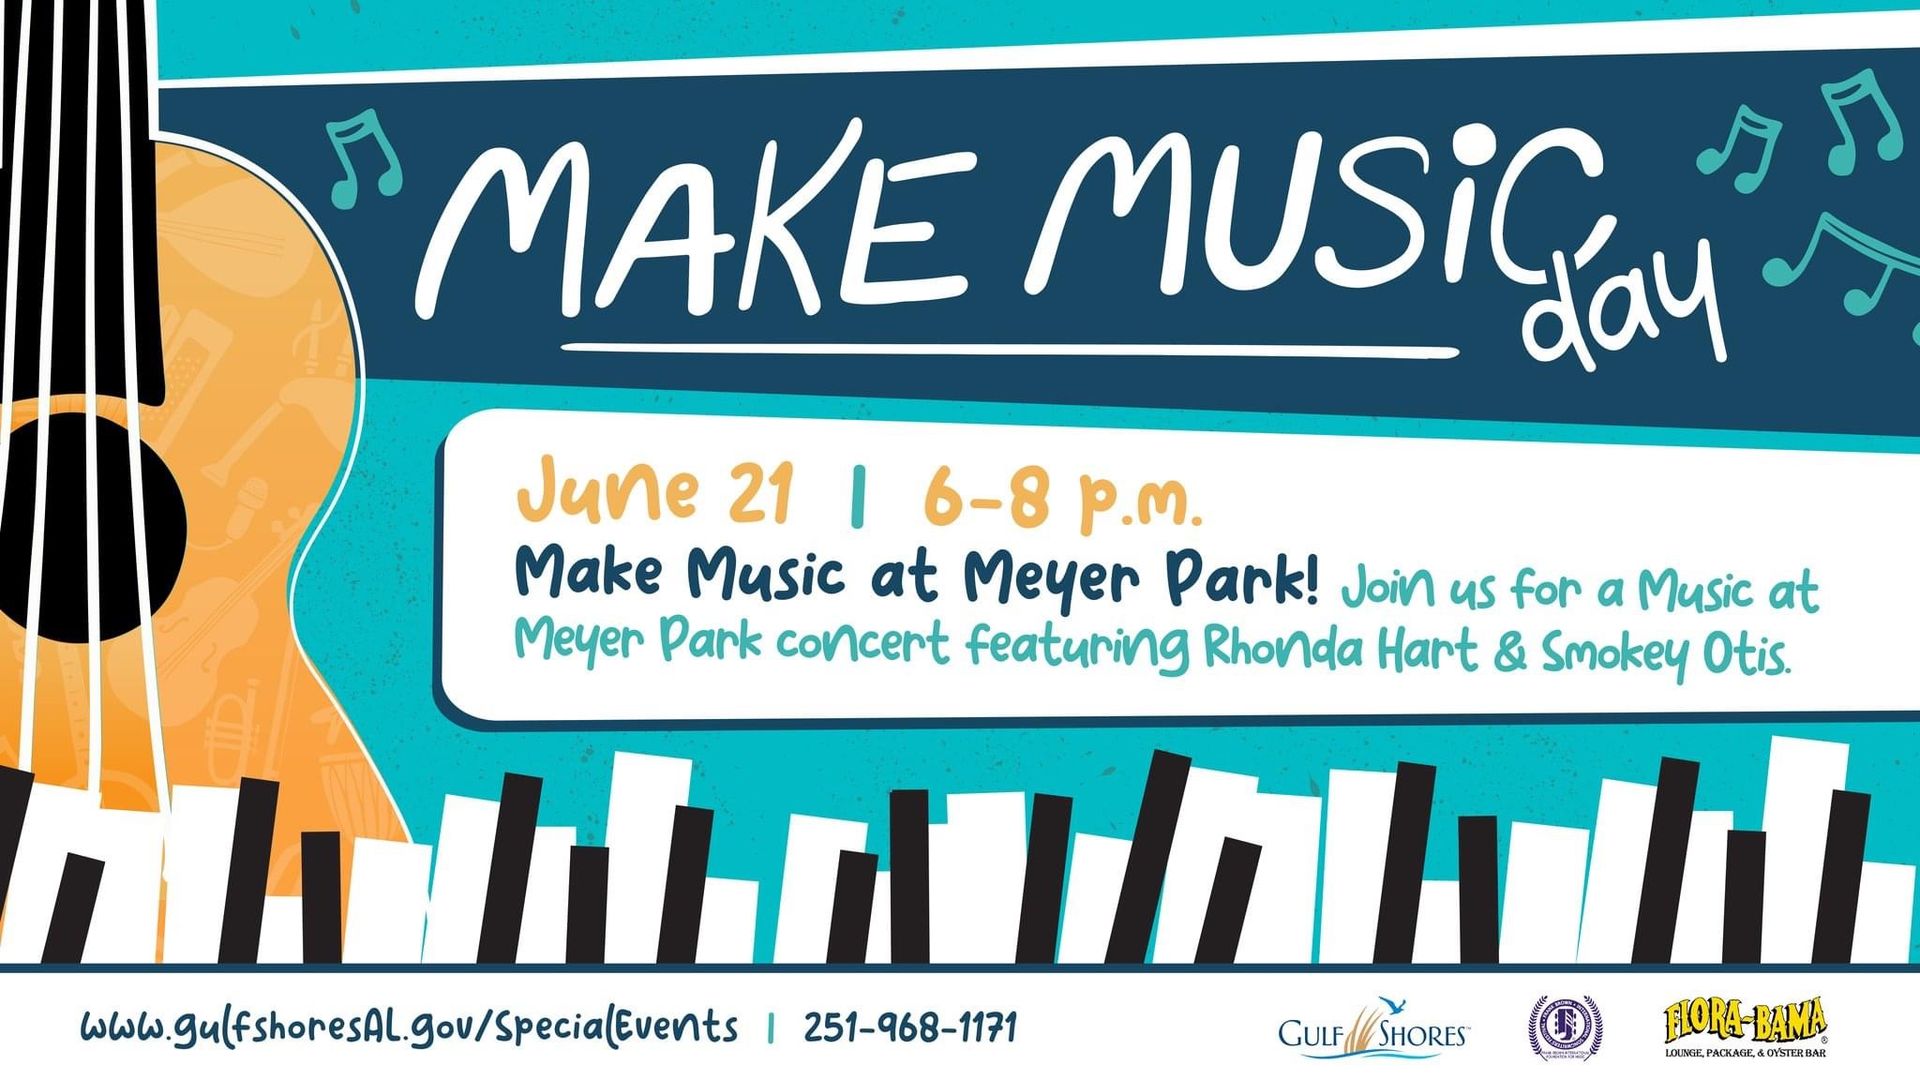 Make Music Day at Meyer Park